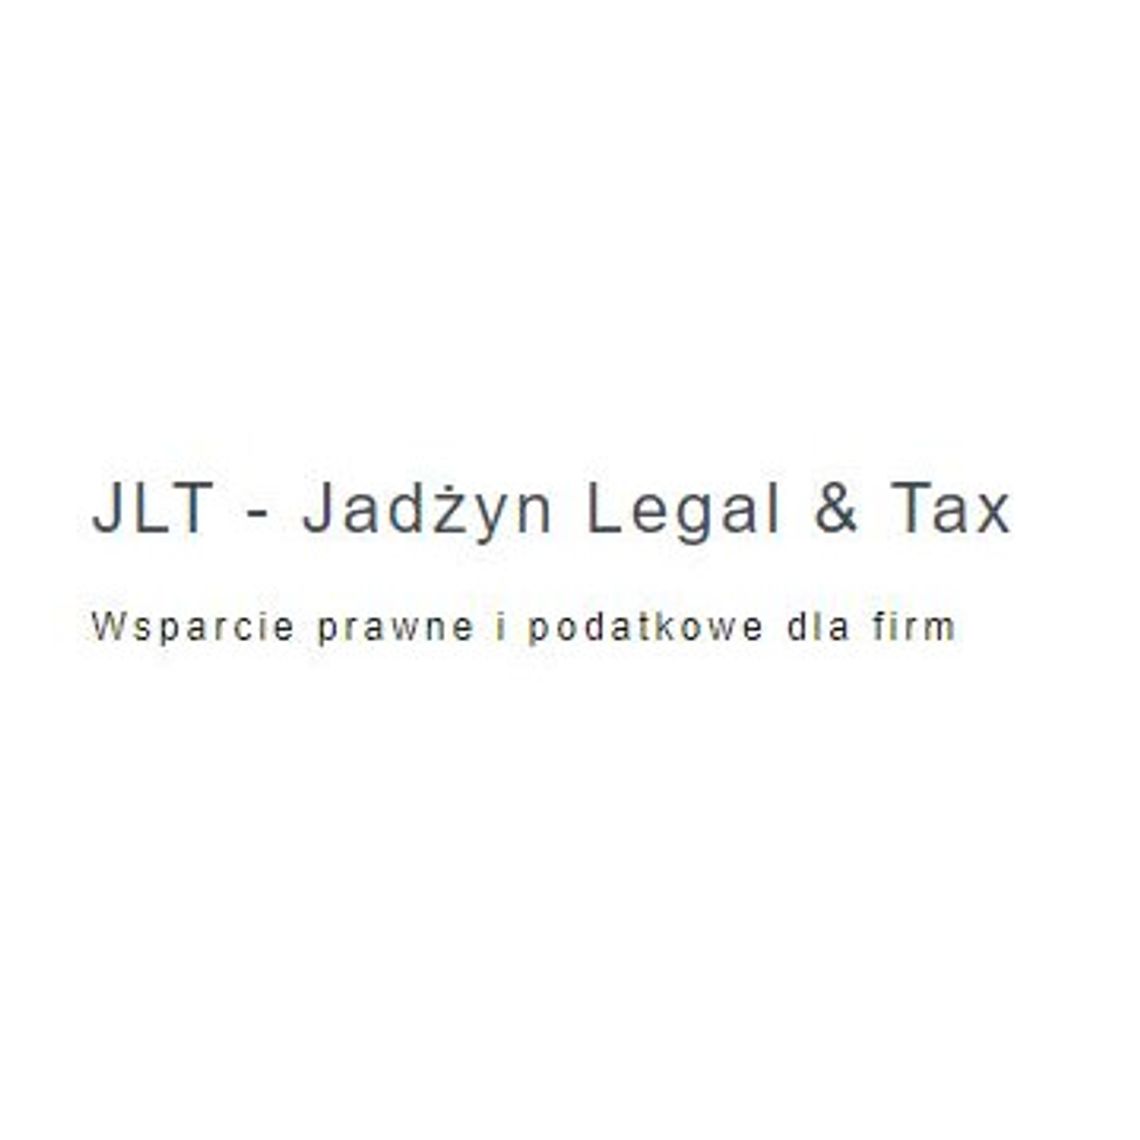 Wsparcie podatkowe dla polskich firm w Niemczech - JLT Jadżyn Legal & Tax